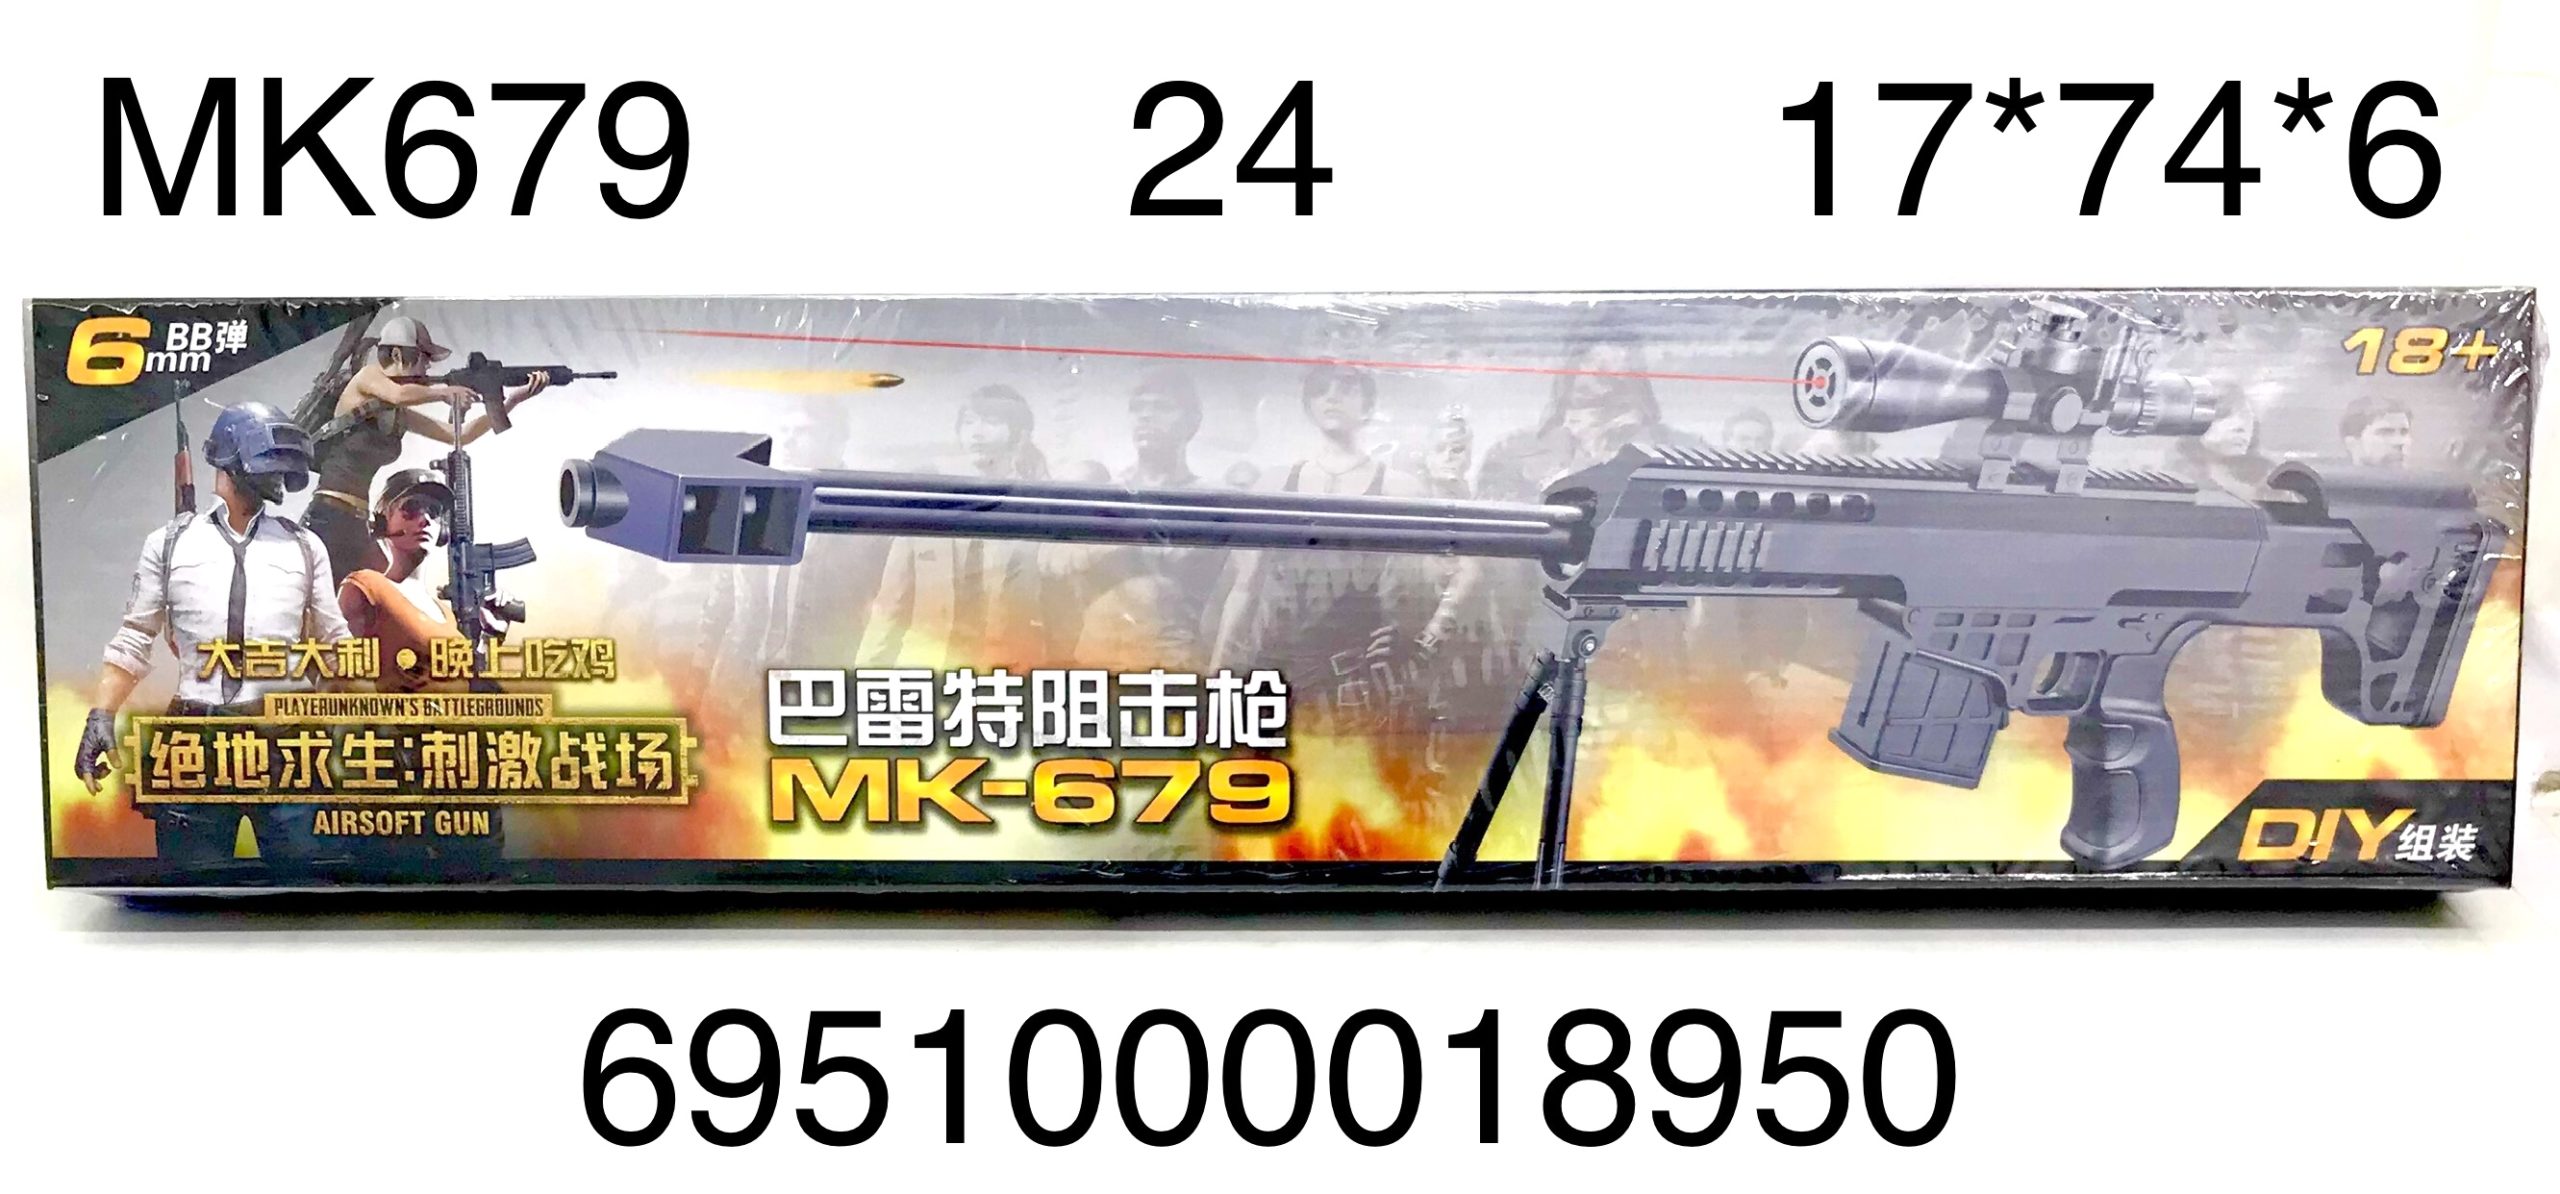 Оружие МК679 с лазерным прицелом - Уфа 